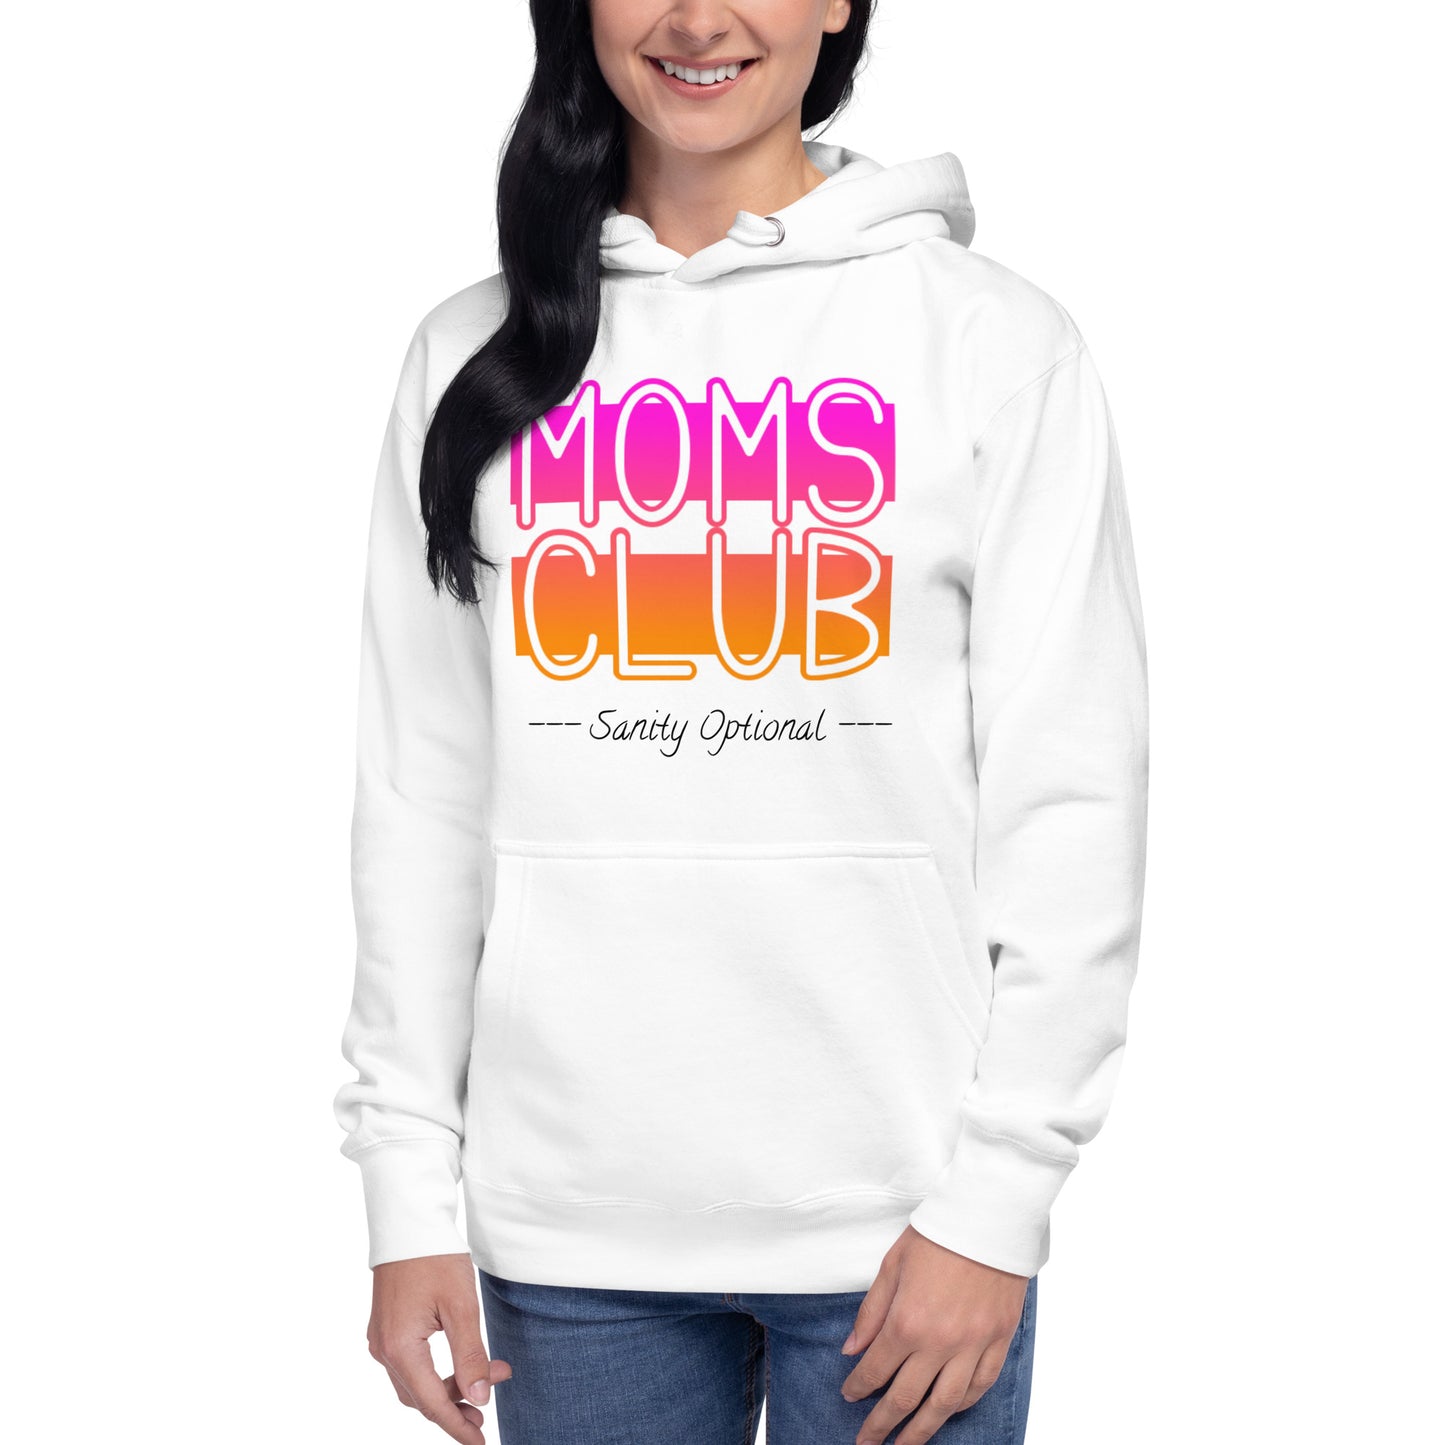 Moms Club -Sanity Optional White Hoodie (pink-orange)